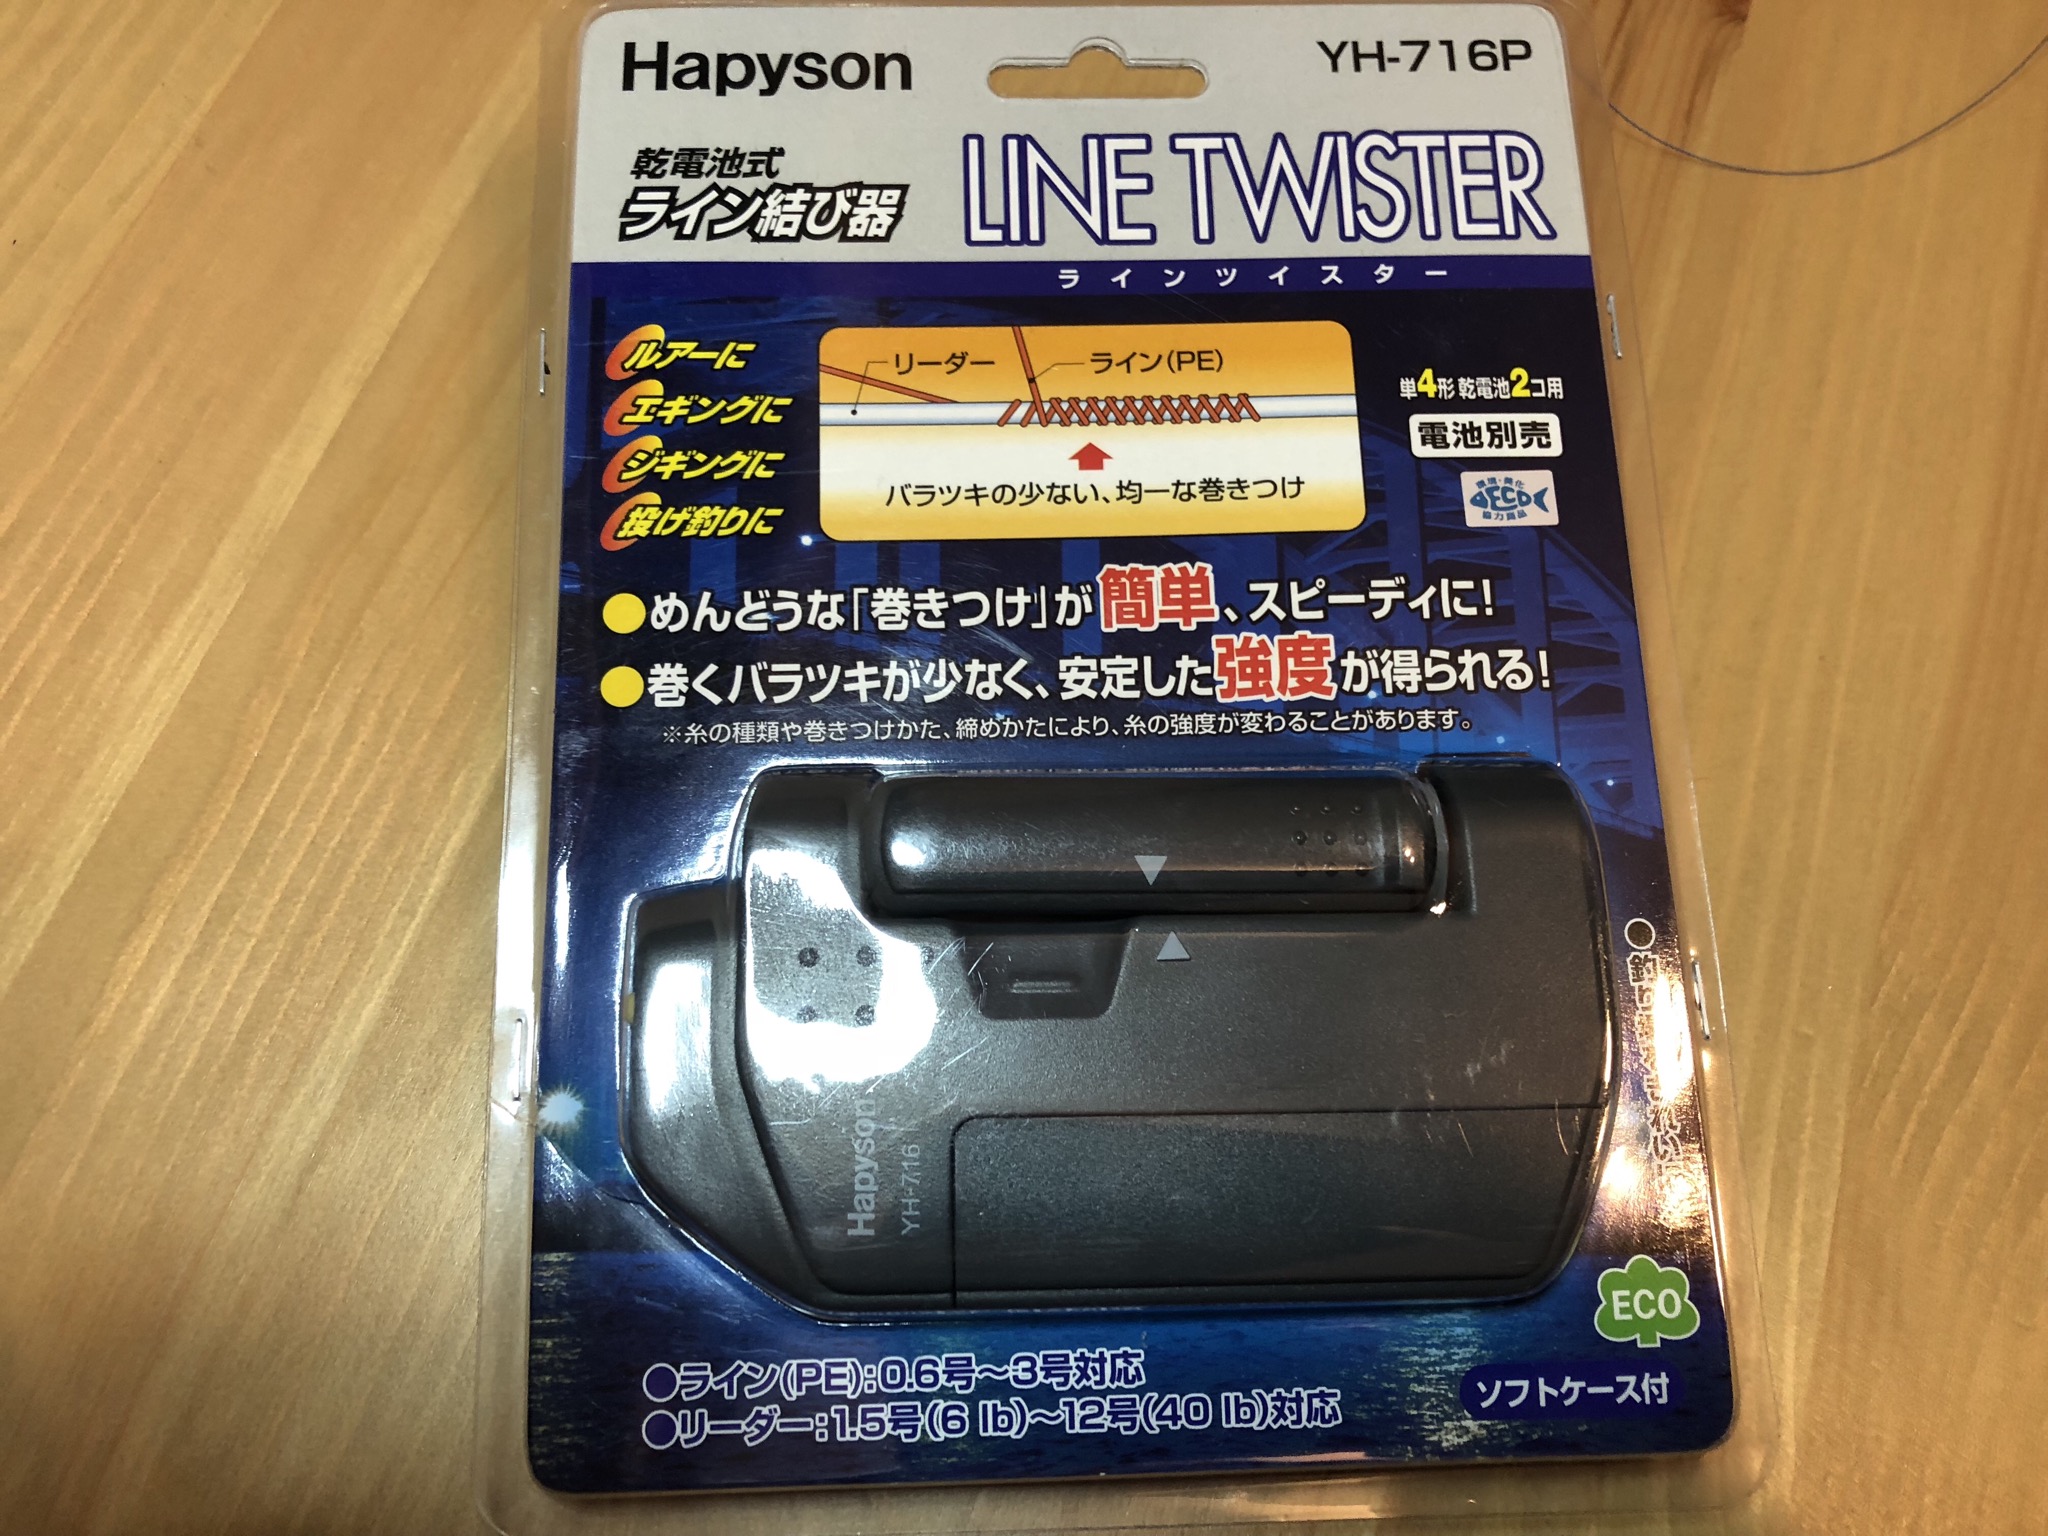 インプレ】Hapyson(ハピソン)ライン結び器 ラインツイスターのレビュー 